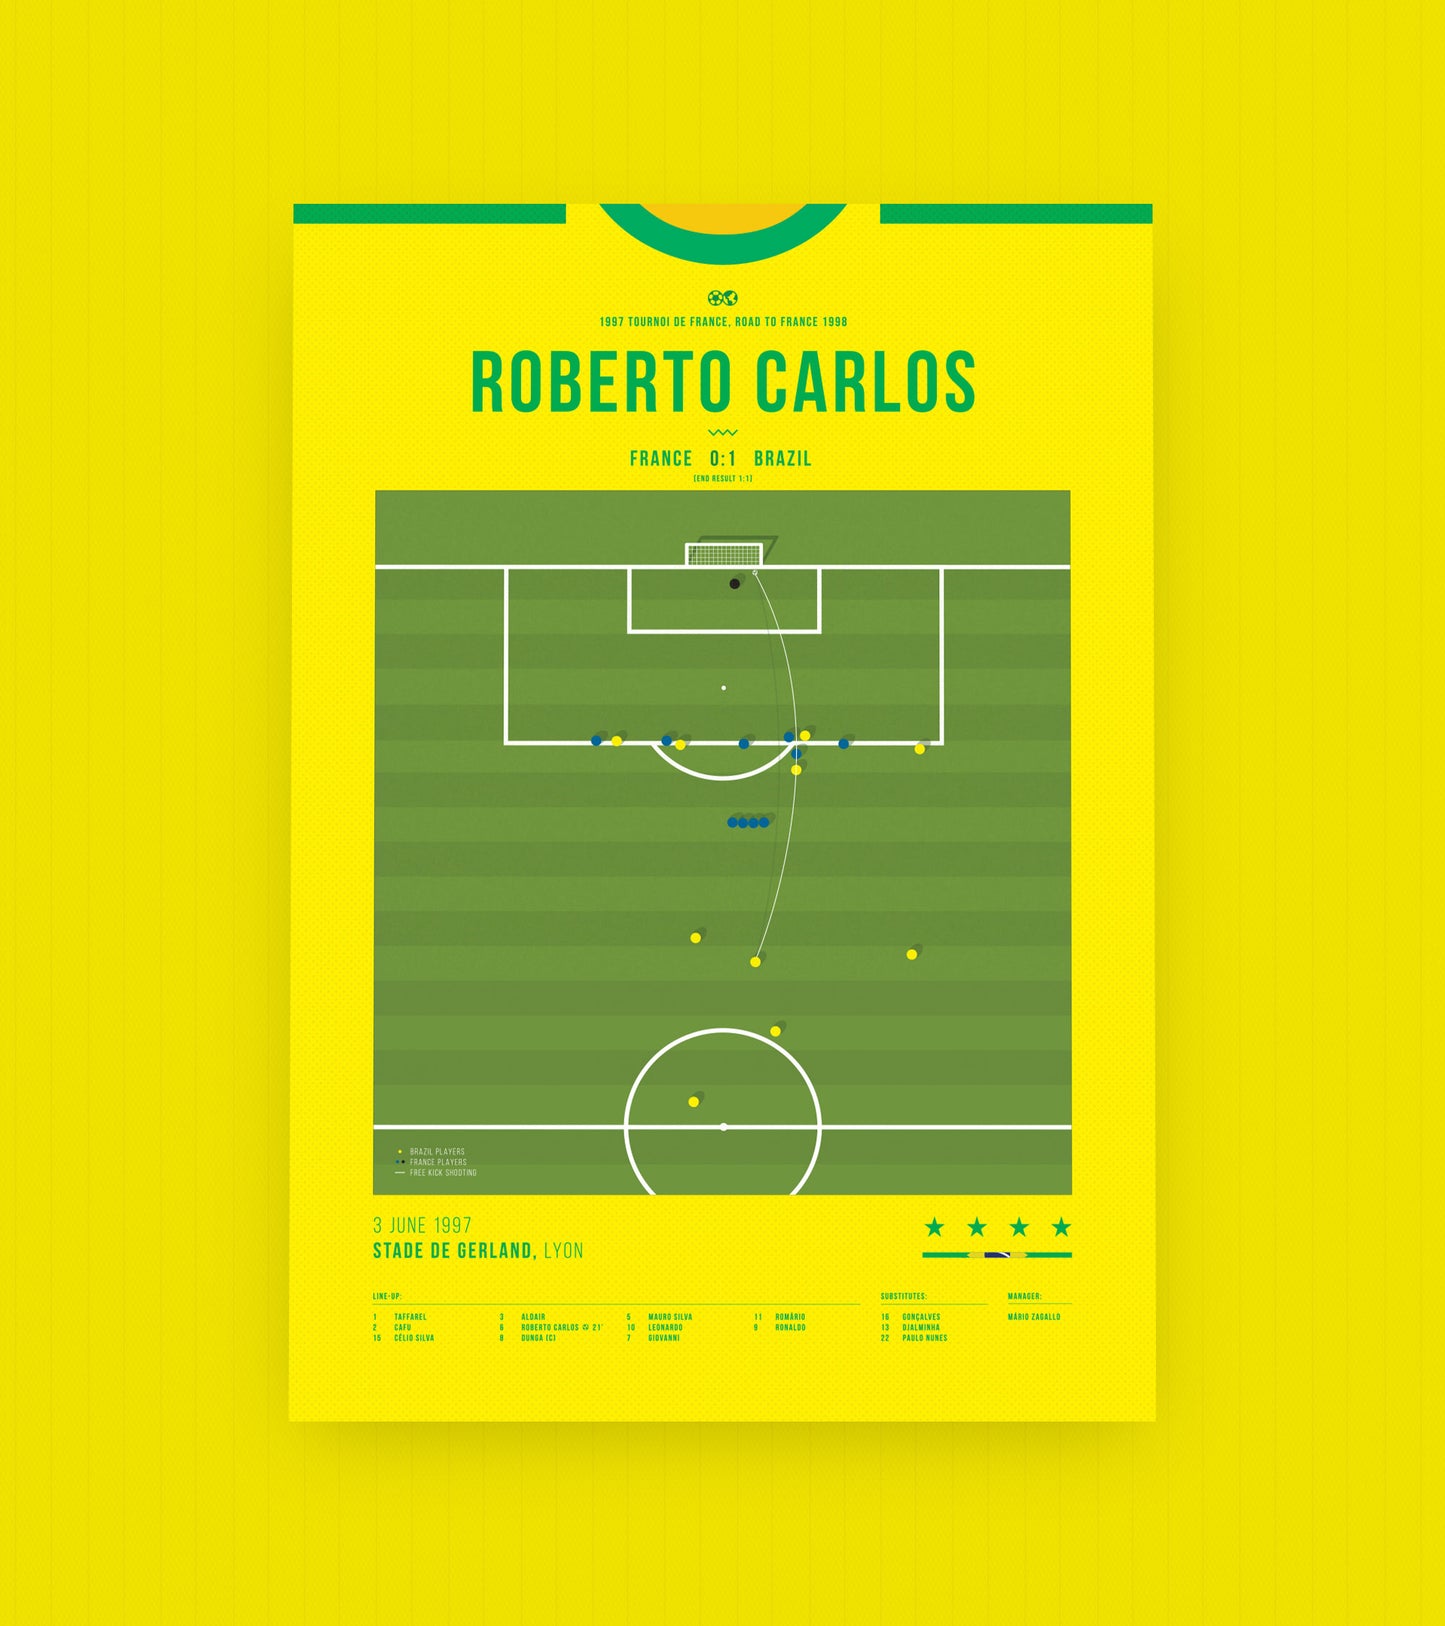 <transcy>Coup franc emblématique de Roberto Carlos contre la France</transcy>